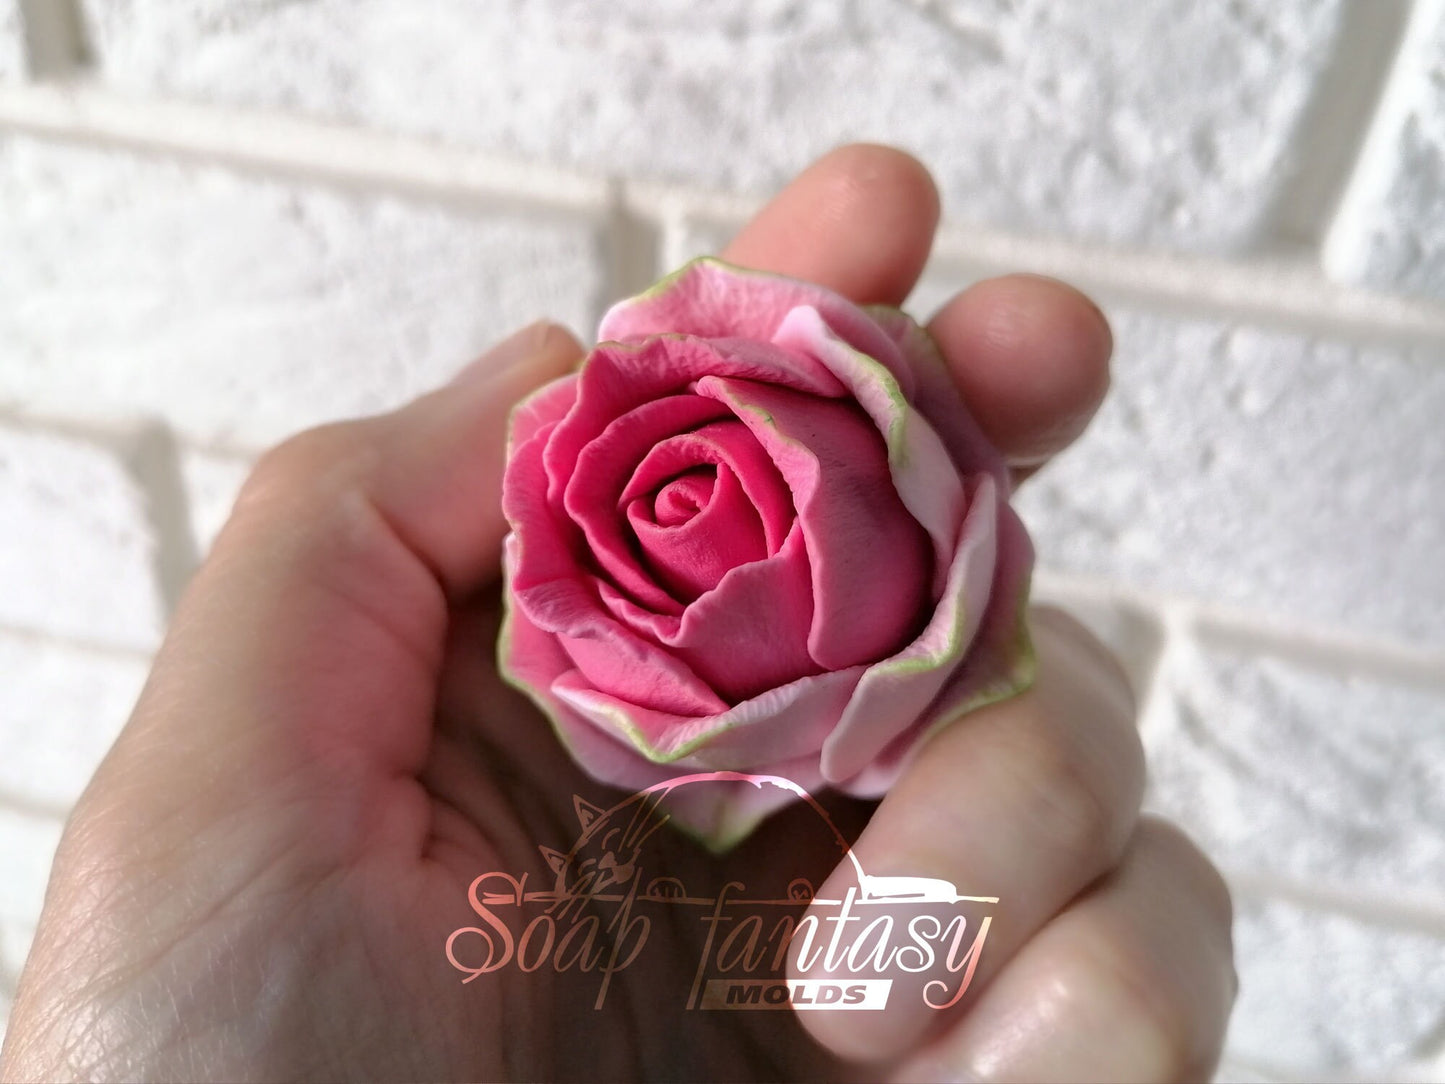 Half opened rose "Iguazu" silicone mold for soap making